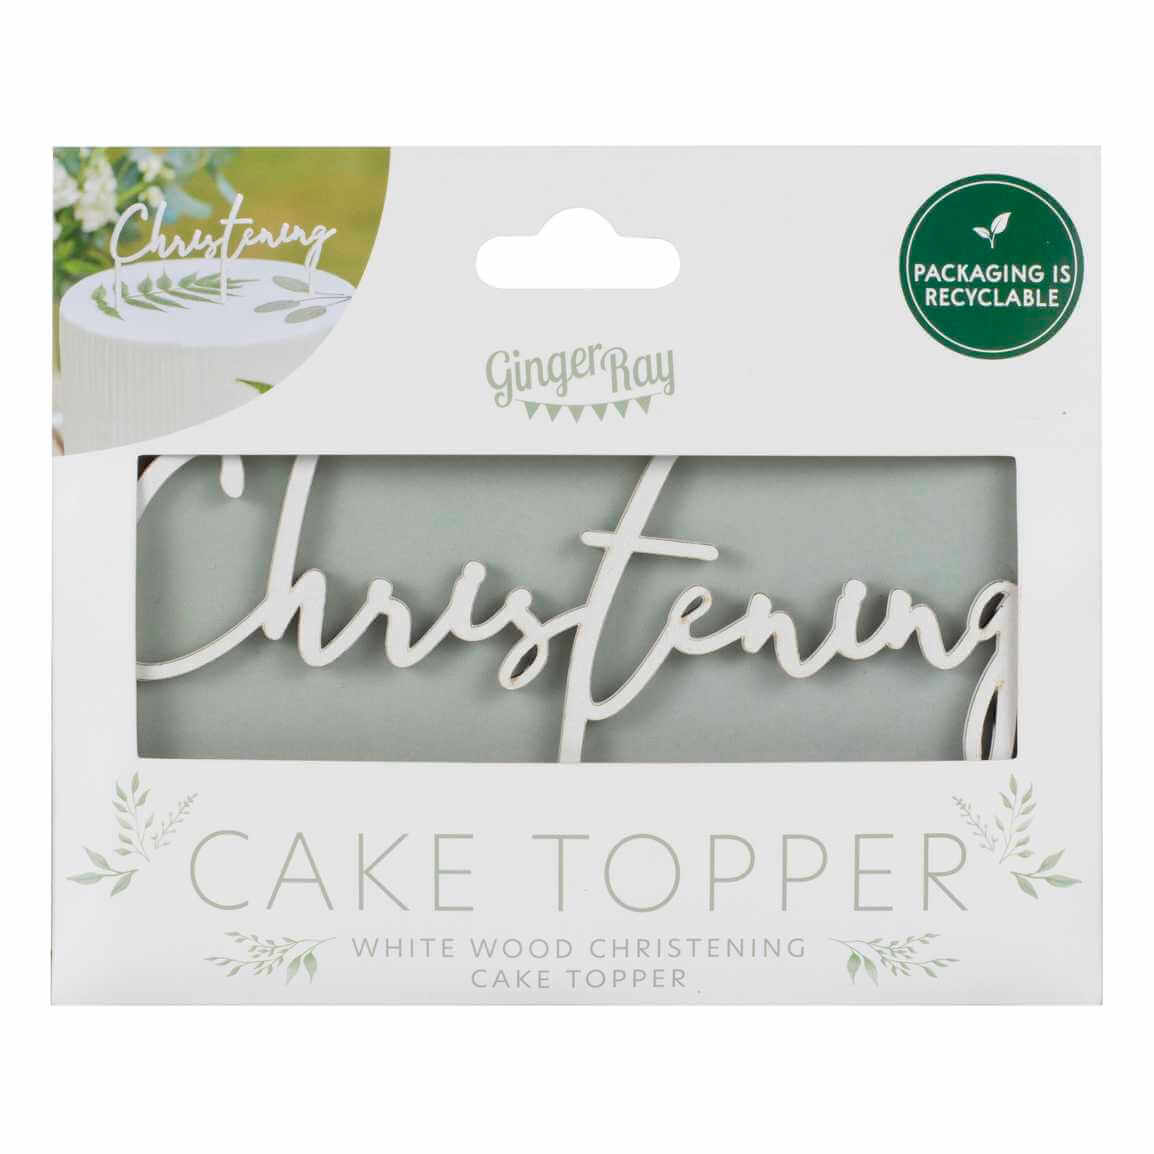 White Wooden Christening Cake Topper